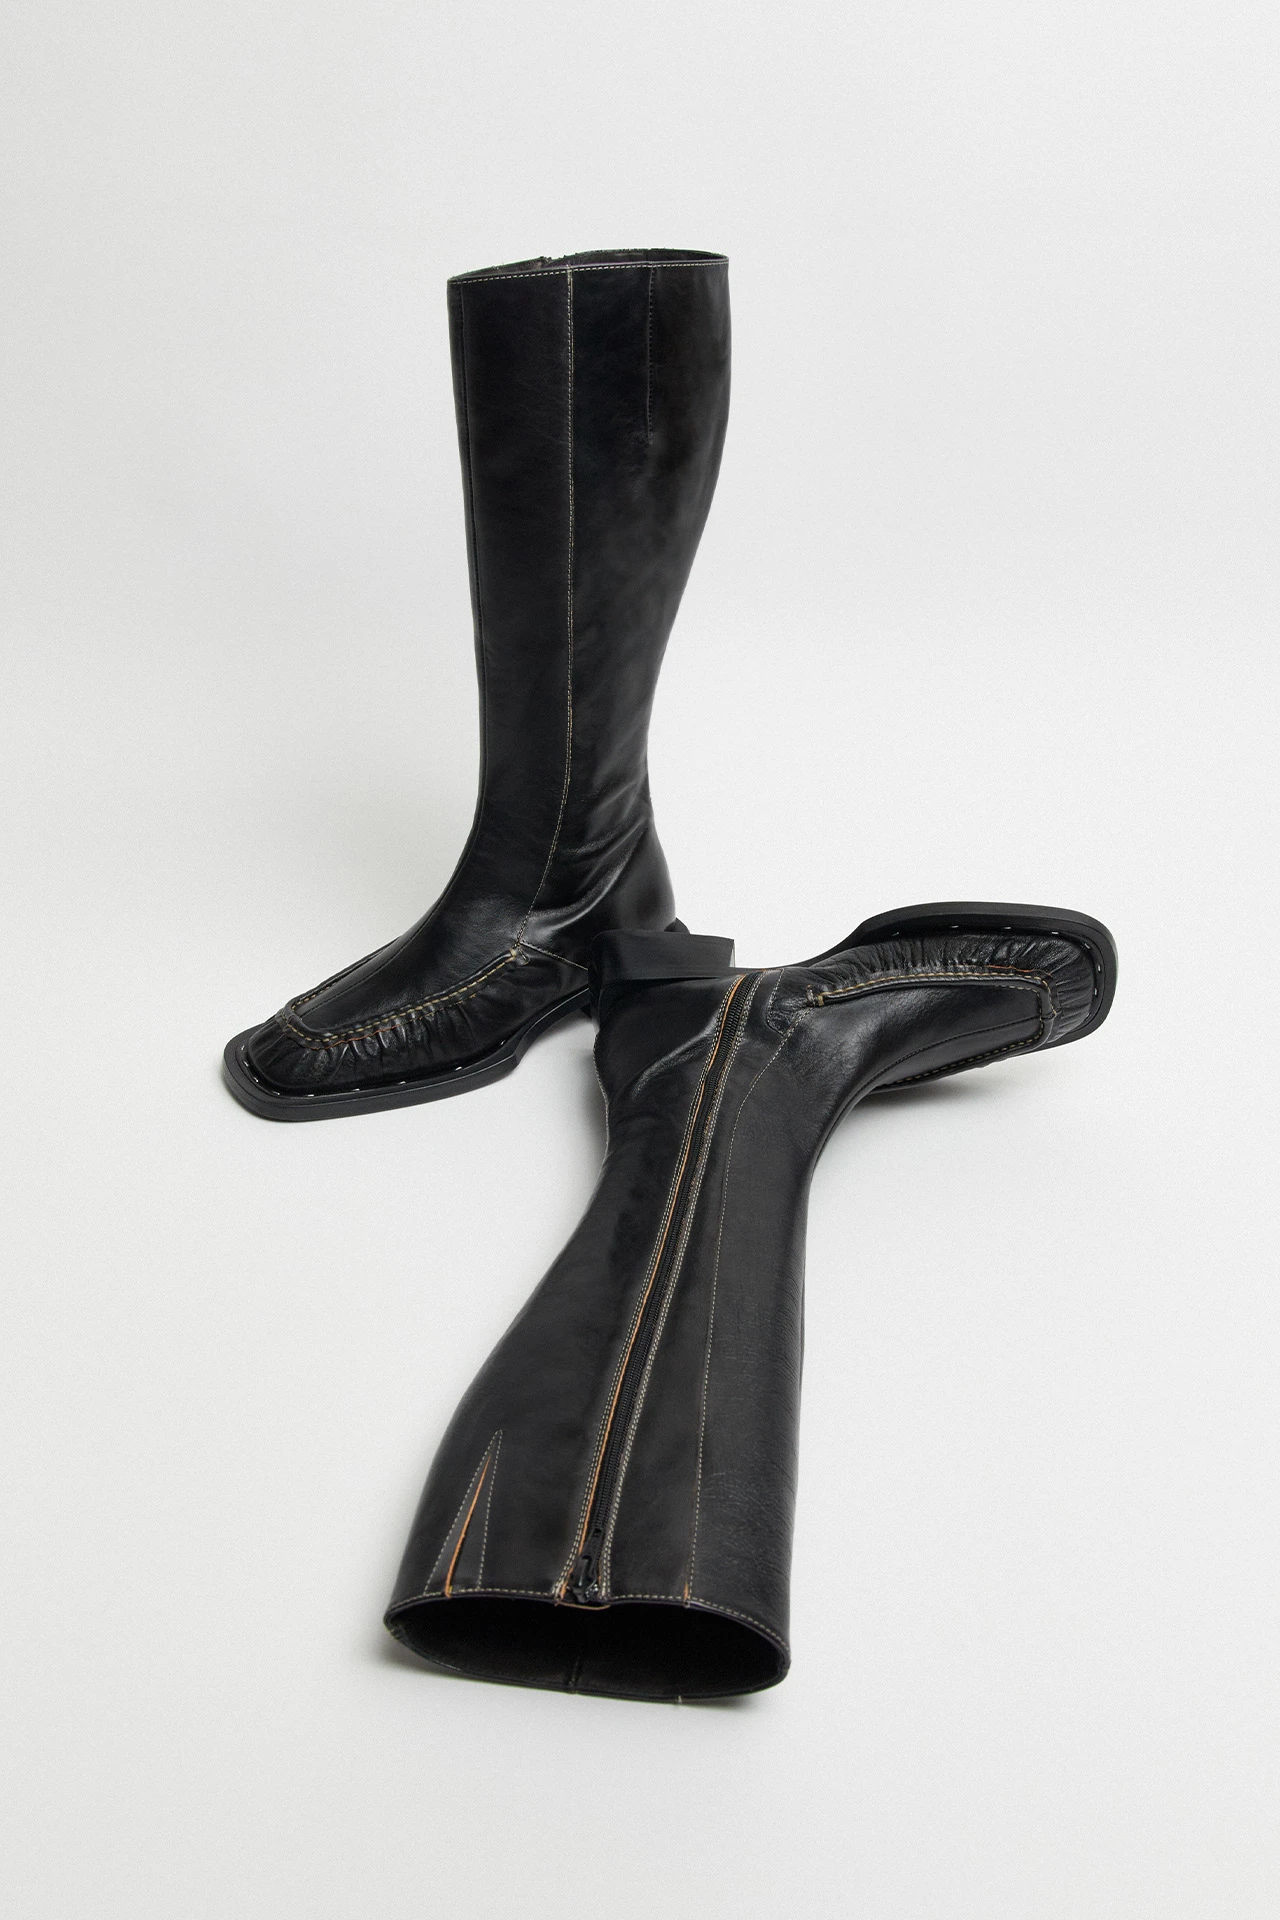 Miista-pats-black-tall-boots-02